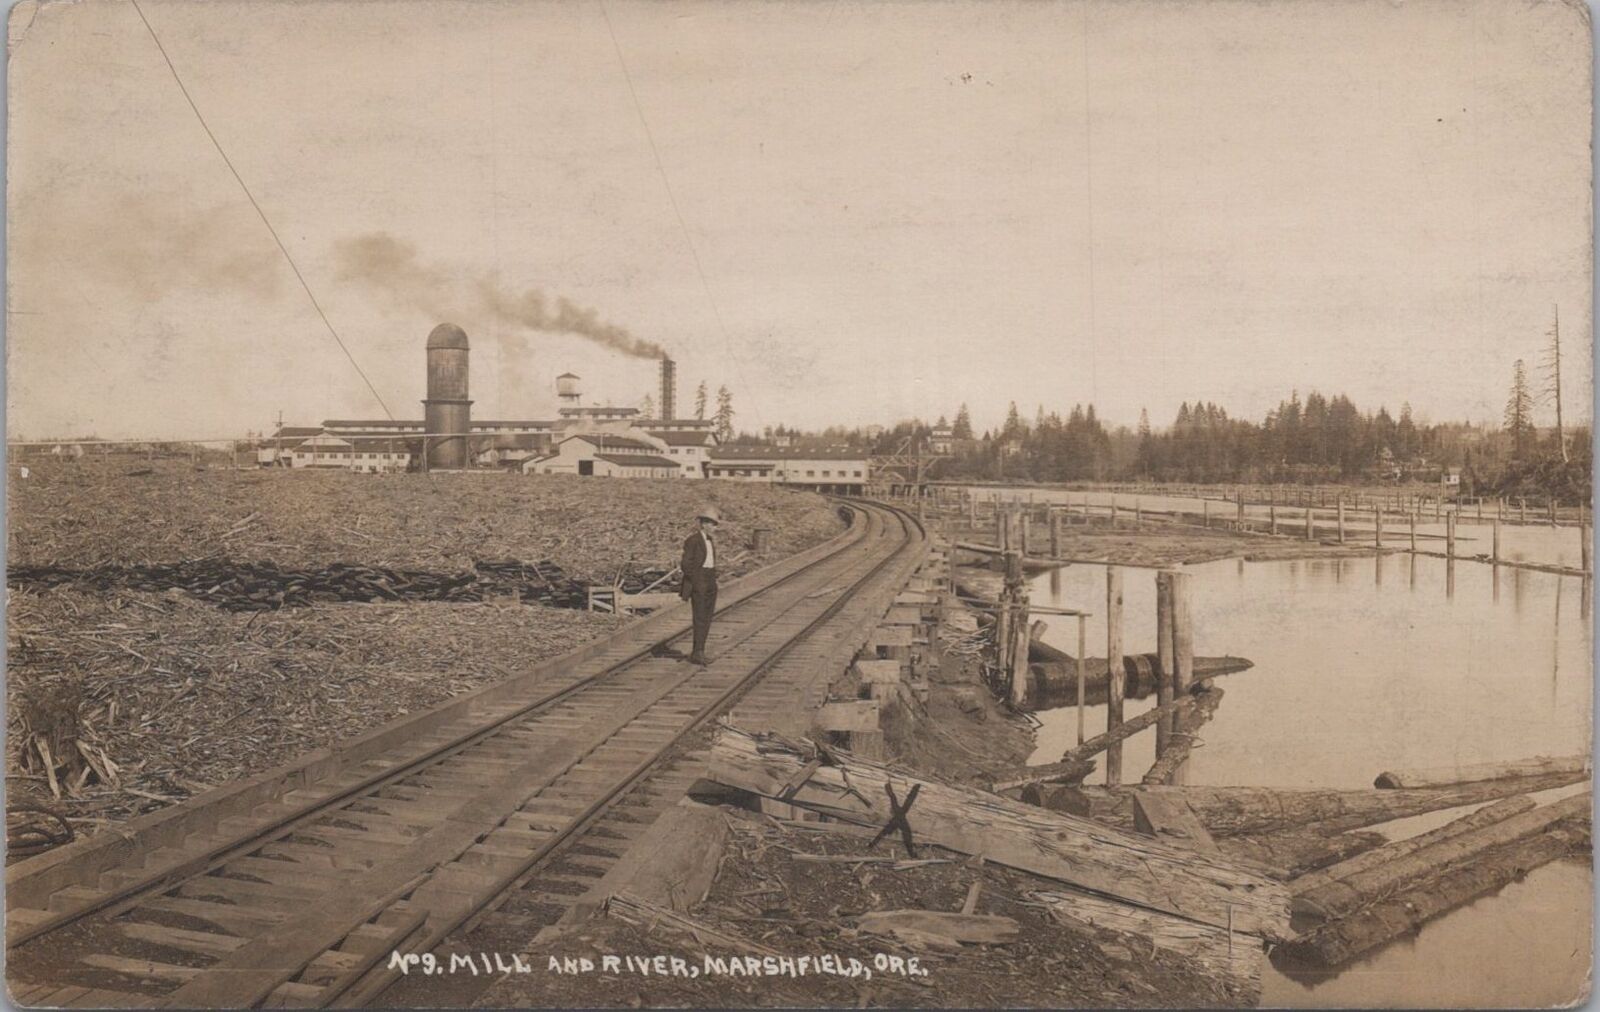 C.A.Smith Mill and River Railroad Marshfield Oregon 1912 RPPC Photo Postcard